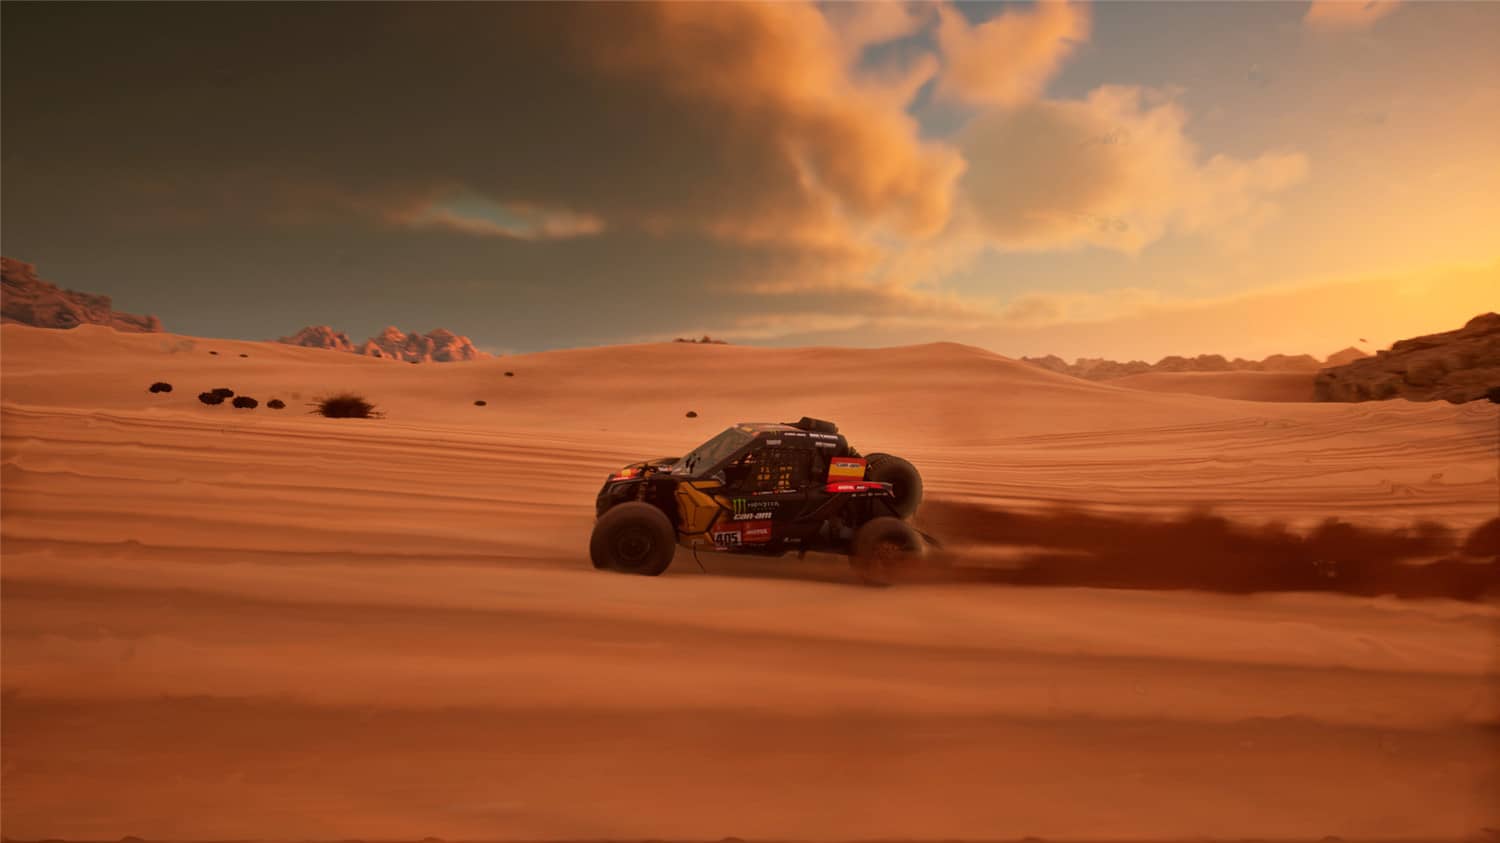 达喀尔拉力赛/Dakar Desert Rally